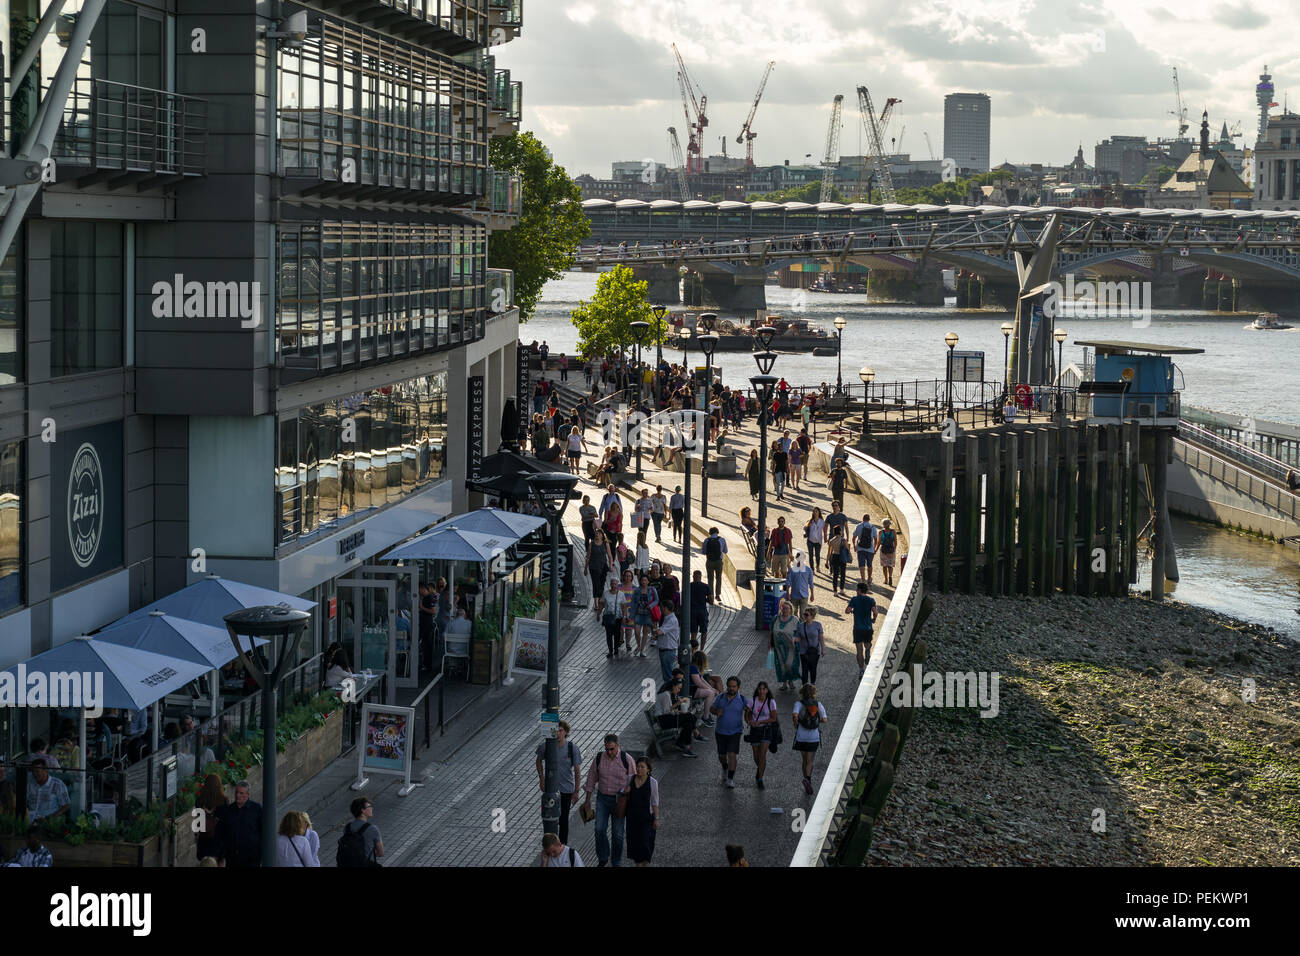 Edificio de Riverside con Zizzi restaurante, gente caminando a lo largo de Bankside con el río Támesis y en el fondo del Puente del Milenio, Londres, Reino Unido. Foto de stock